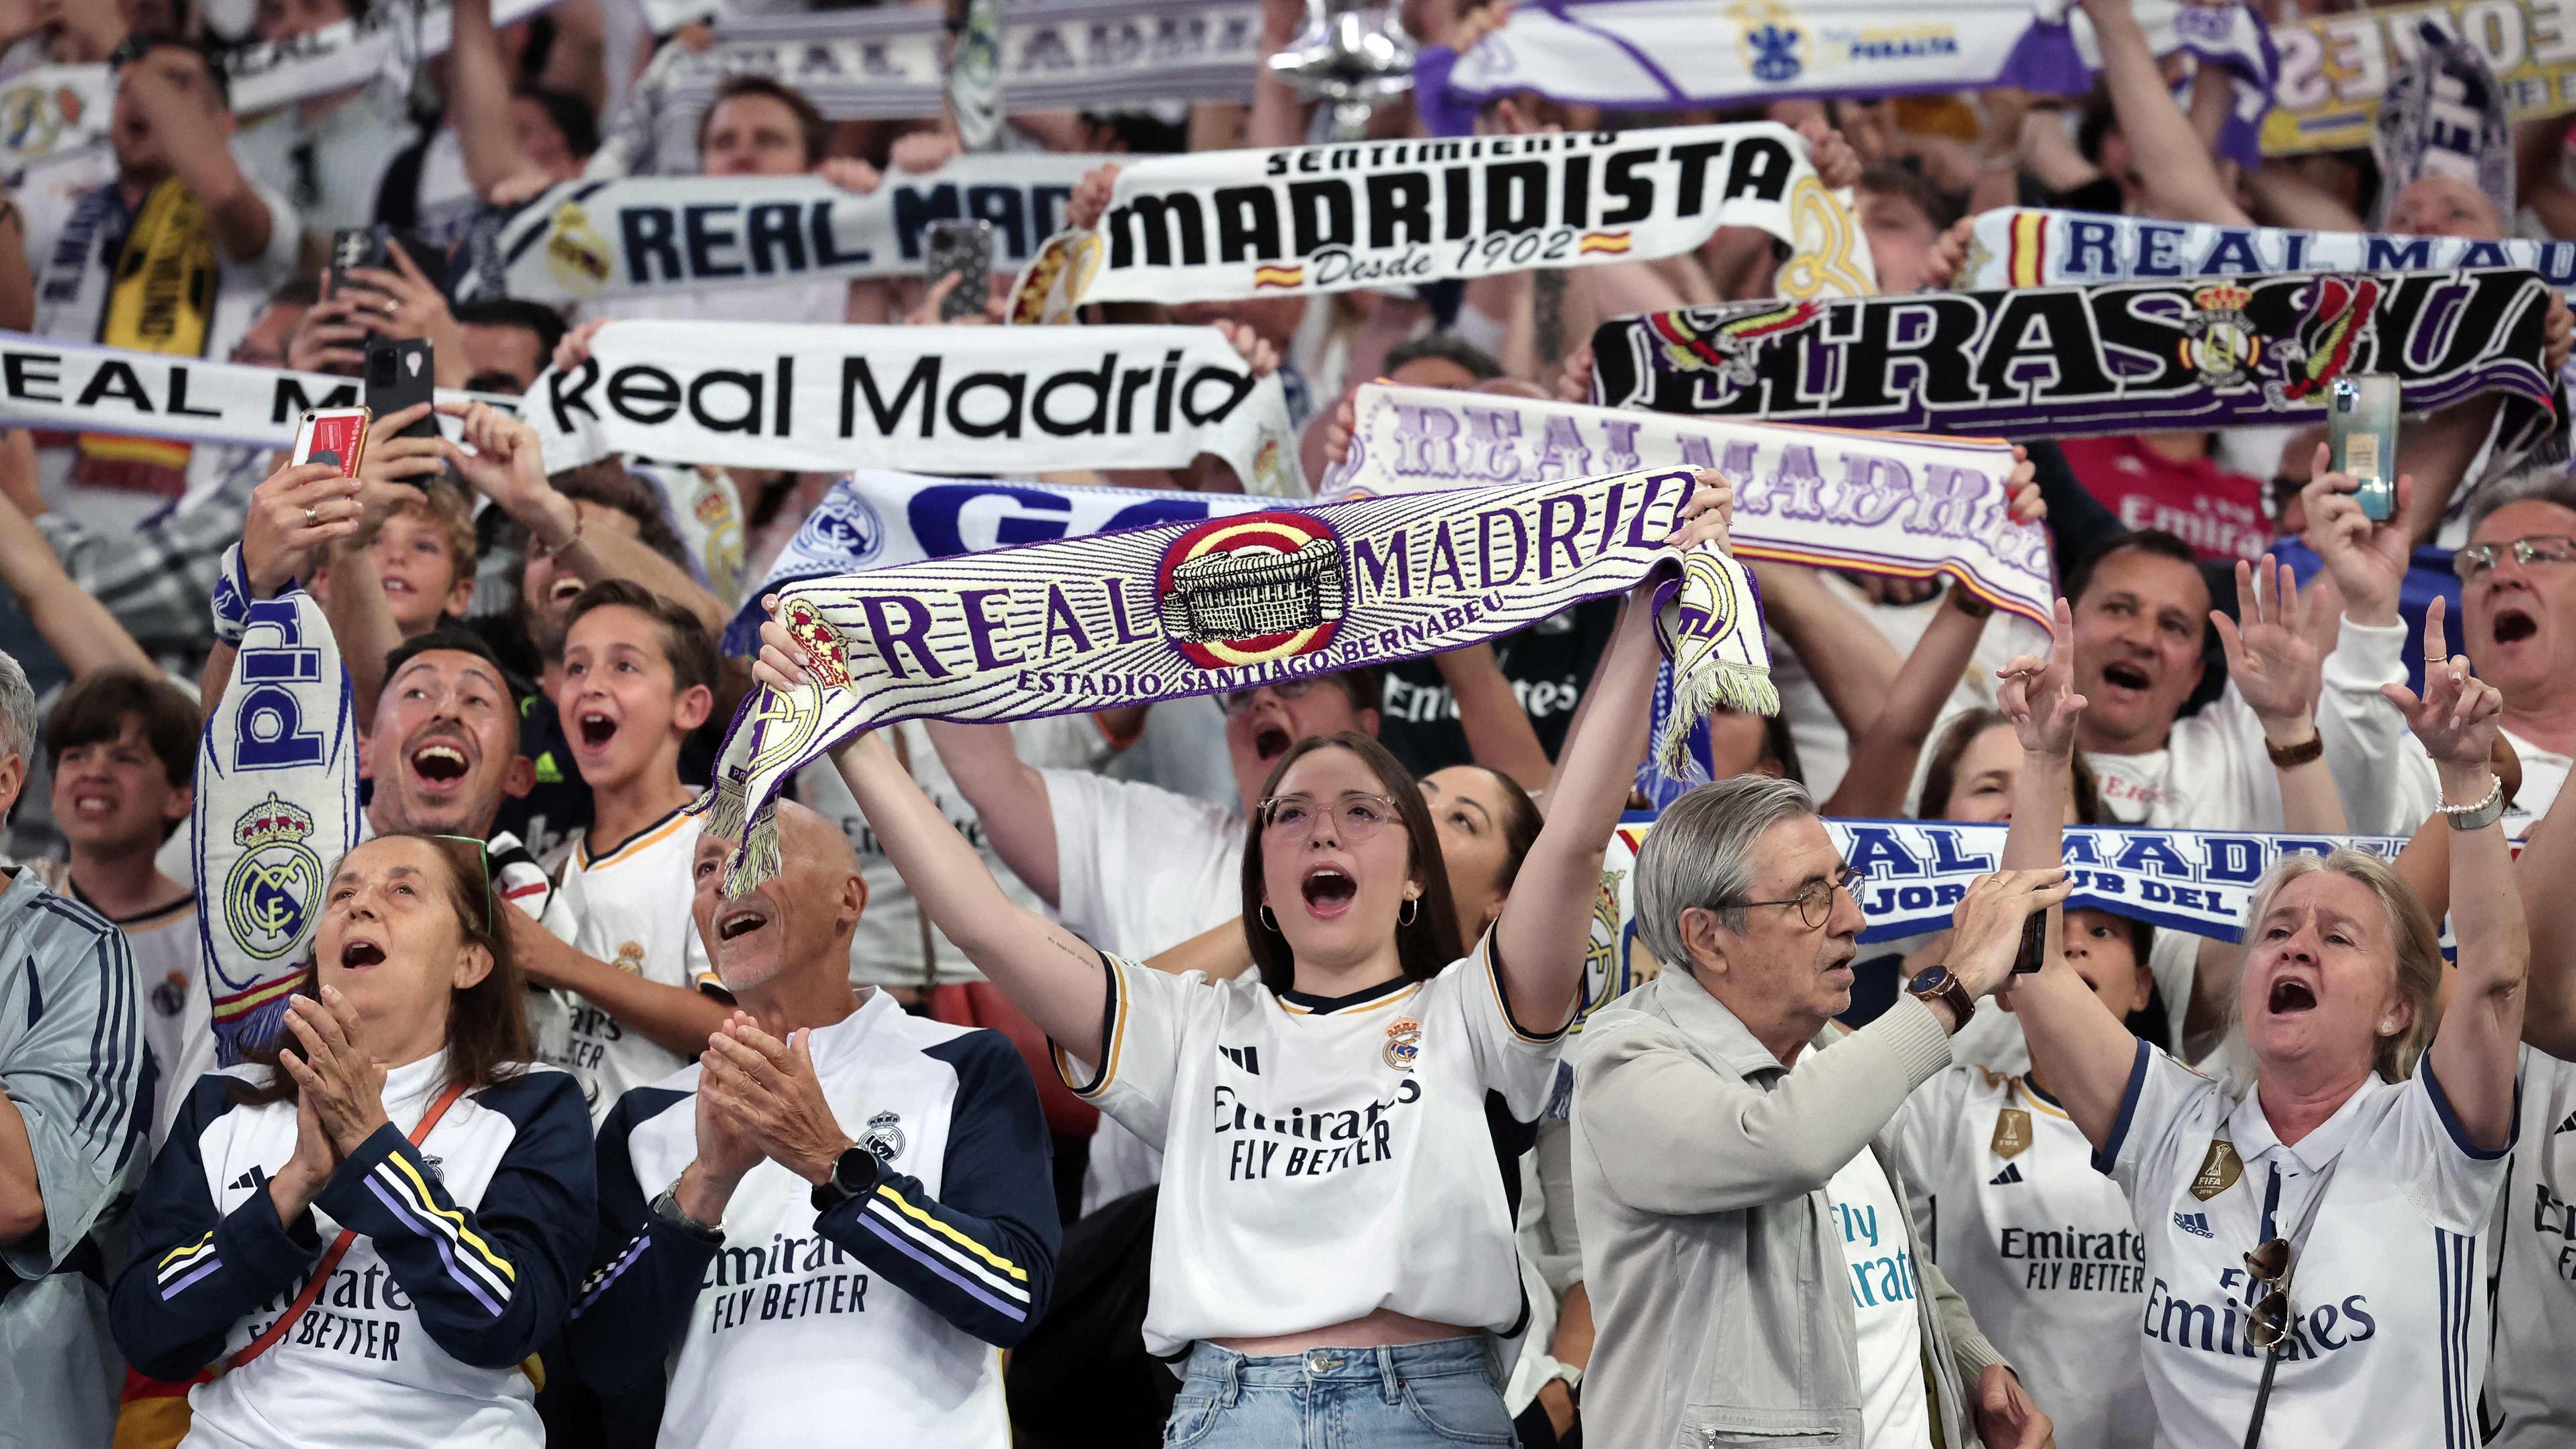 Jubelnde Fans des Vereins Real Madrid